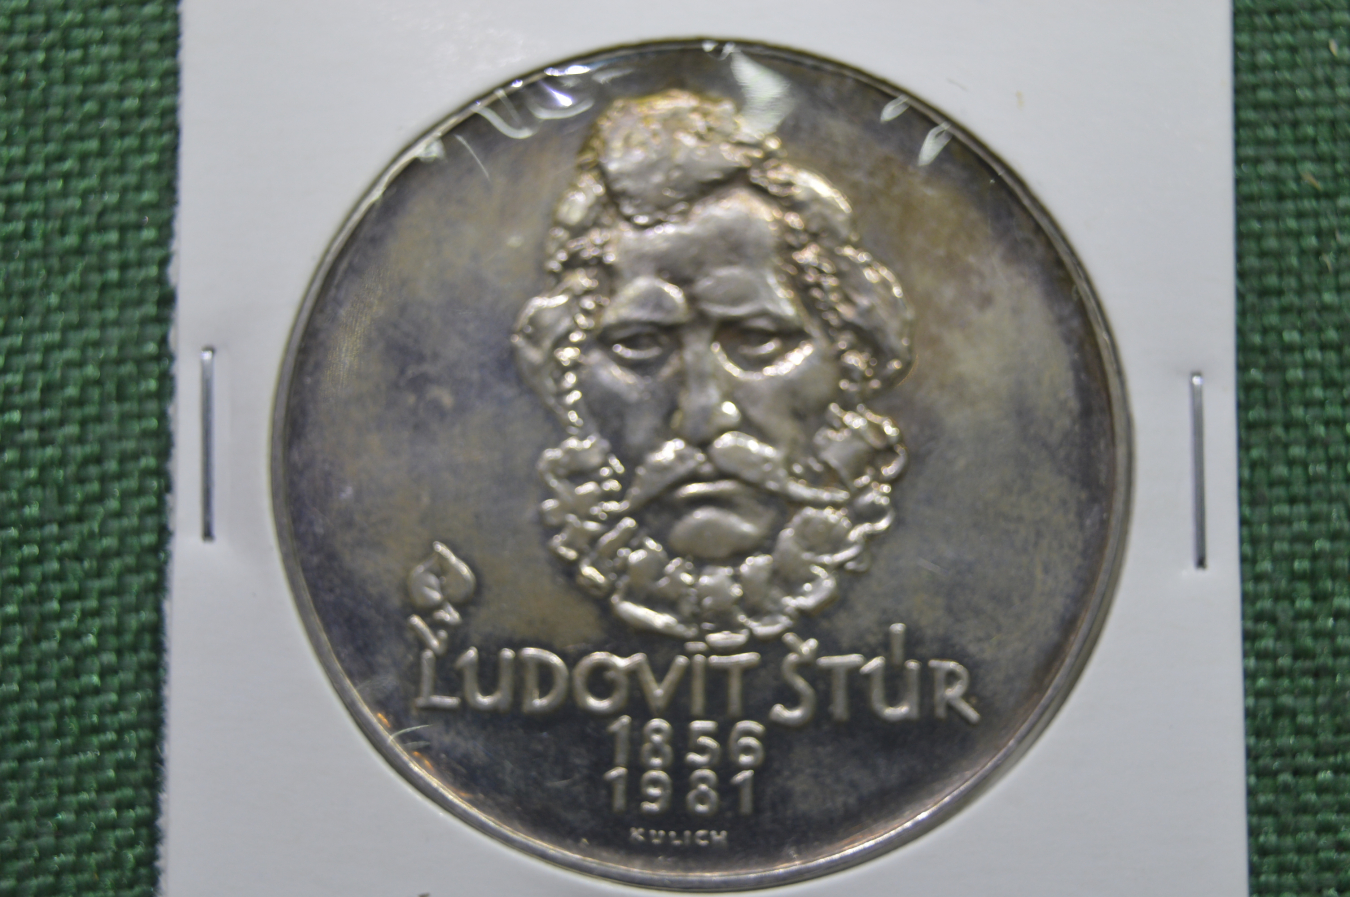 500 кронов в рублях. Чехословакия 500 крон. Людовит Штур. Медаль серебро 1956-1981 Чехословакия Spork. 500 Крон в рублях.